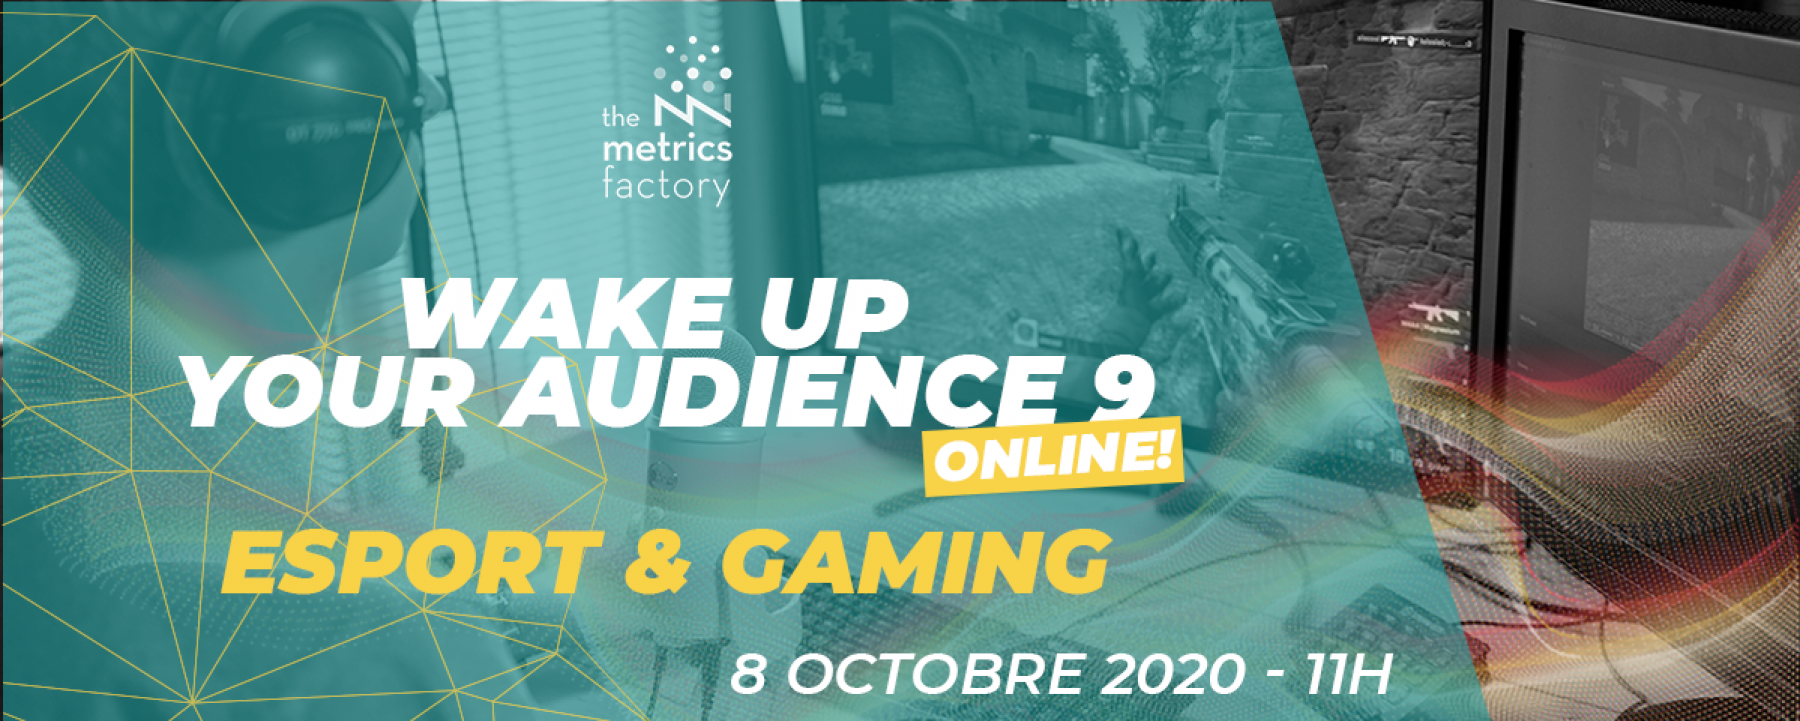 Wake Up Your Audience #9 - Esport & Gaming, un conférence en ligne organisée par The Metric Factory le 8 octobre